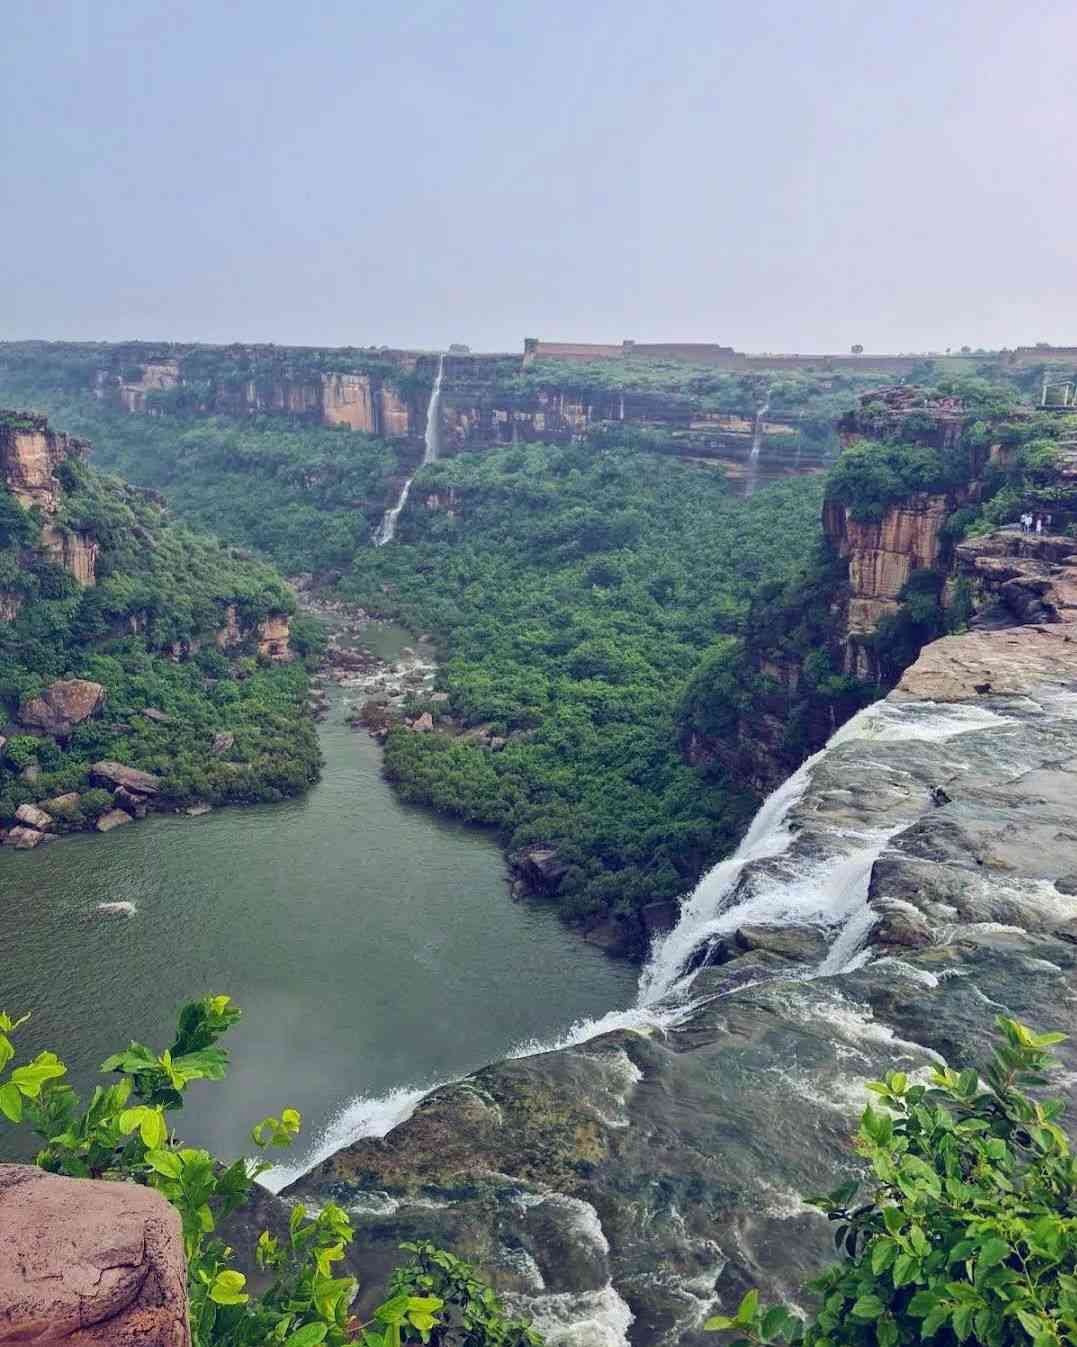 Chachai Waterfall Madhya Pradesh Info In Hindi